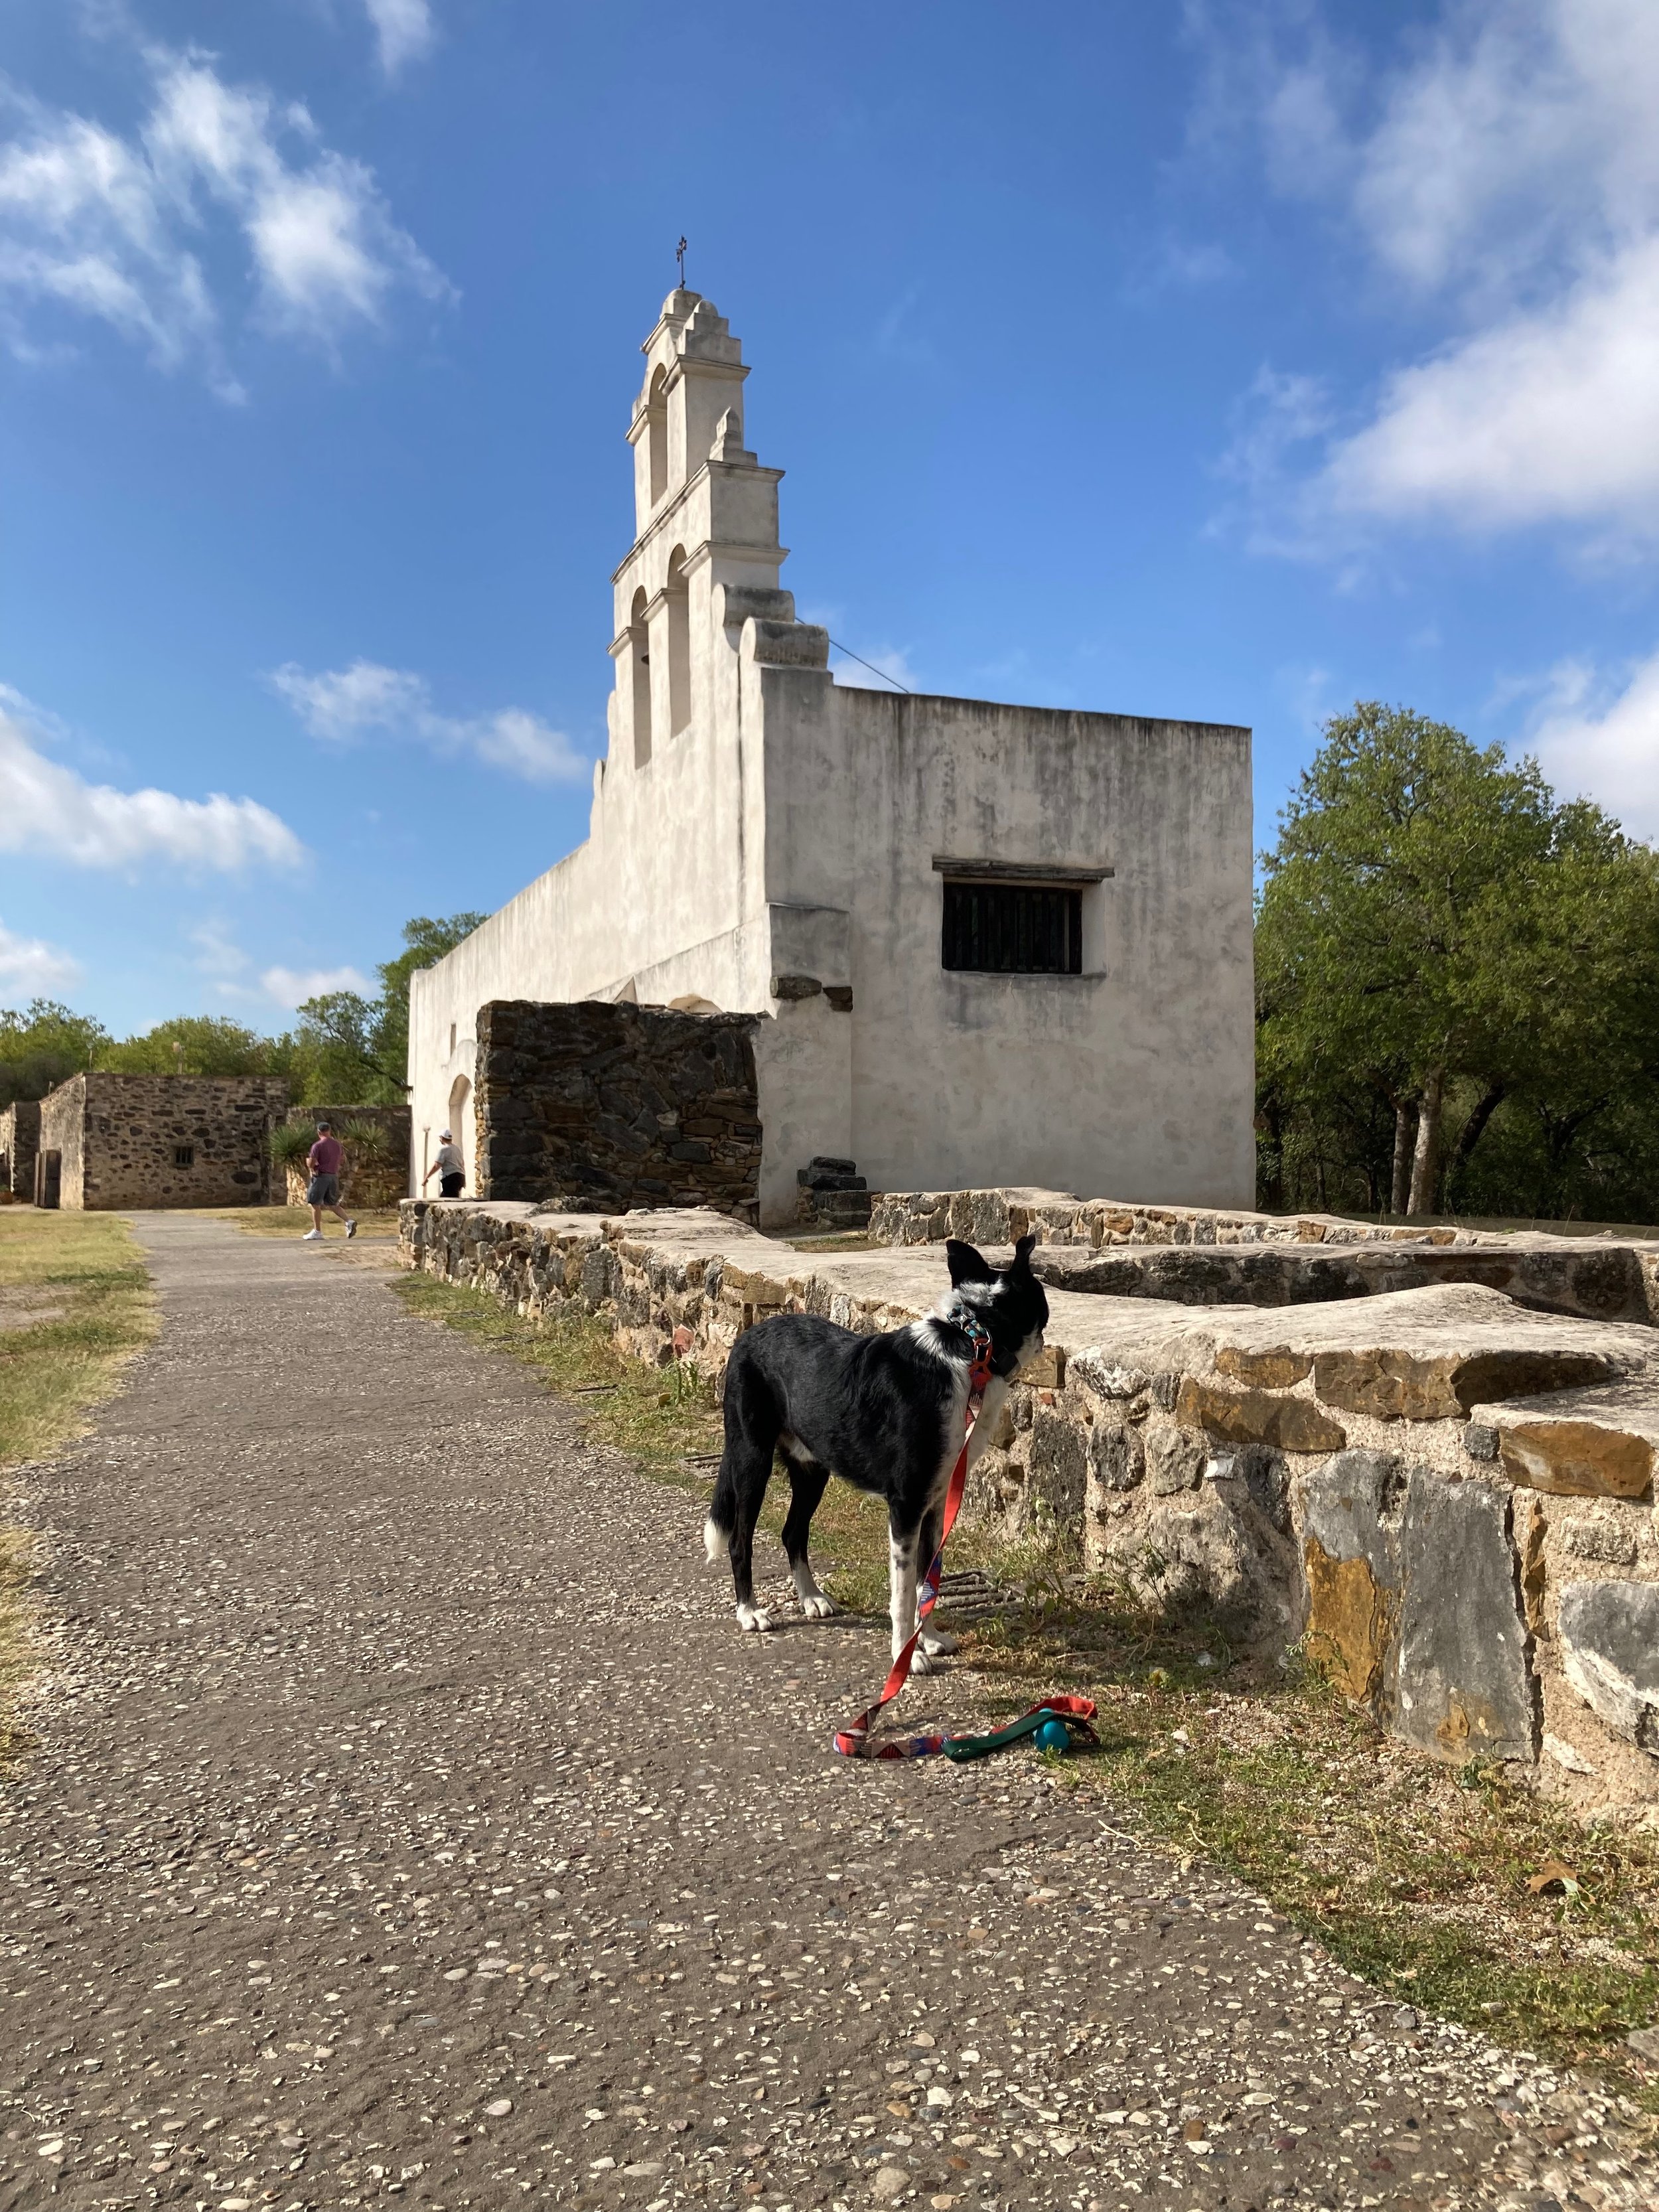 Mission San Juan Capistrano - San Antonio, TX